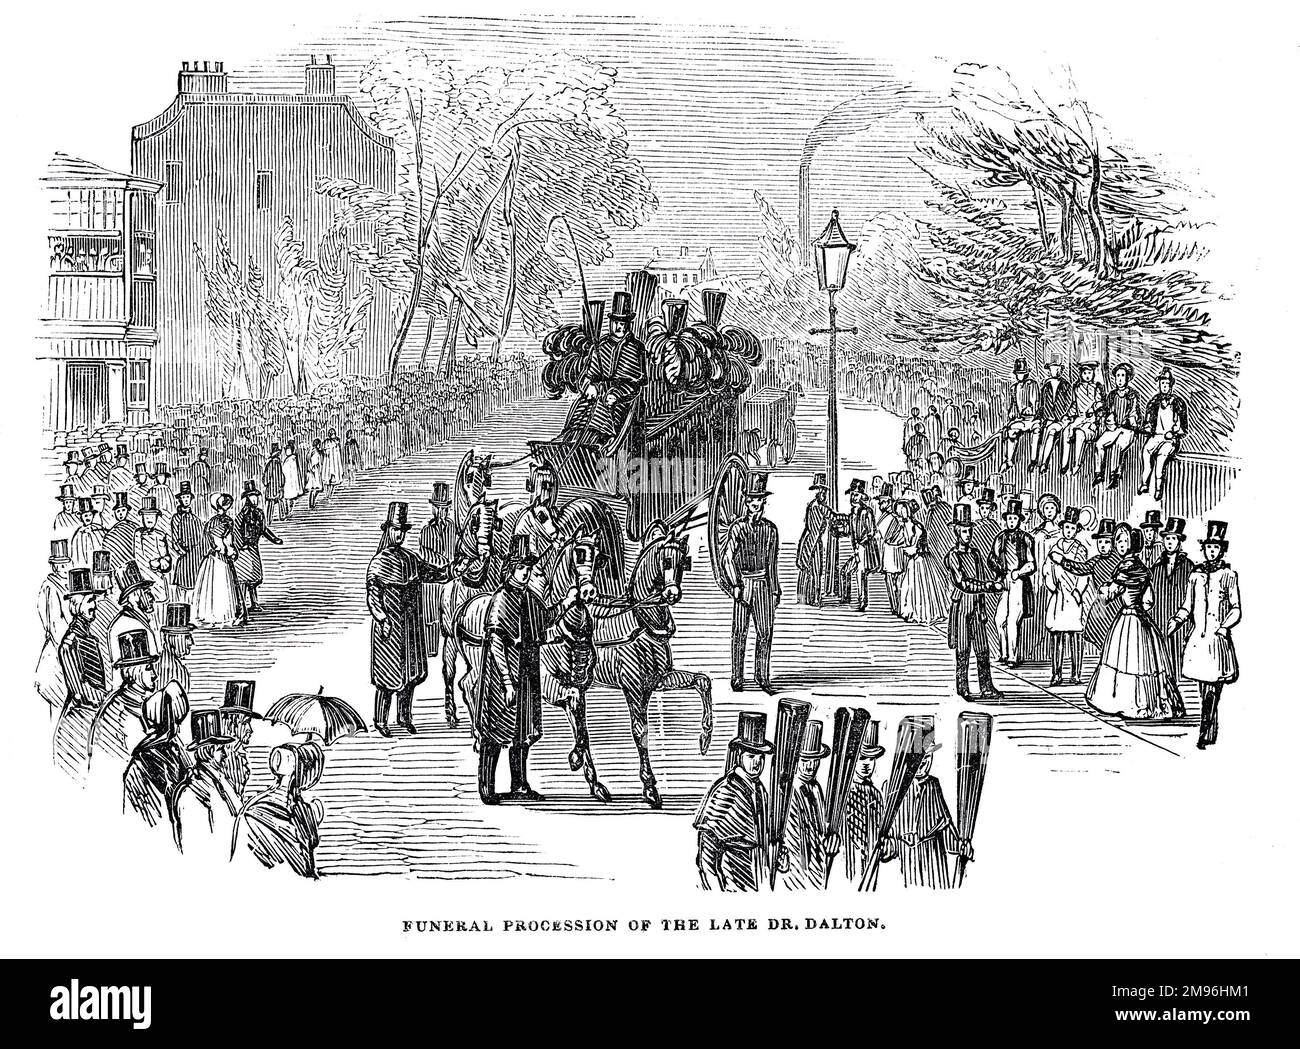 Procesión funeraria del fallecido Dr. John Dalton, Manchester. Ilustración en blanco y negro del London Illustrated News; agosto de 1844. Foto de stock